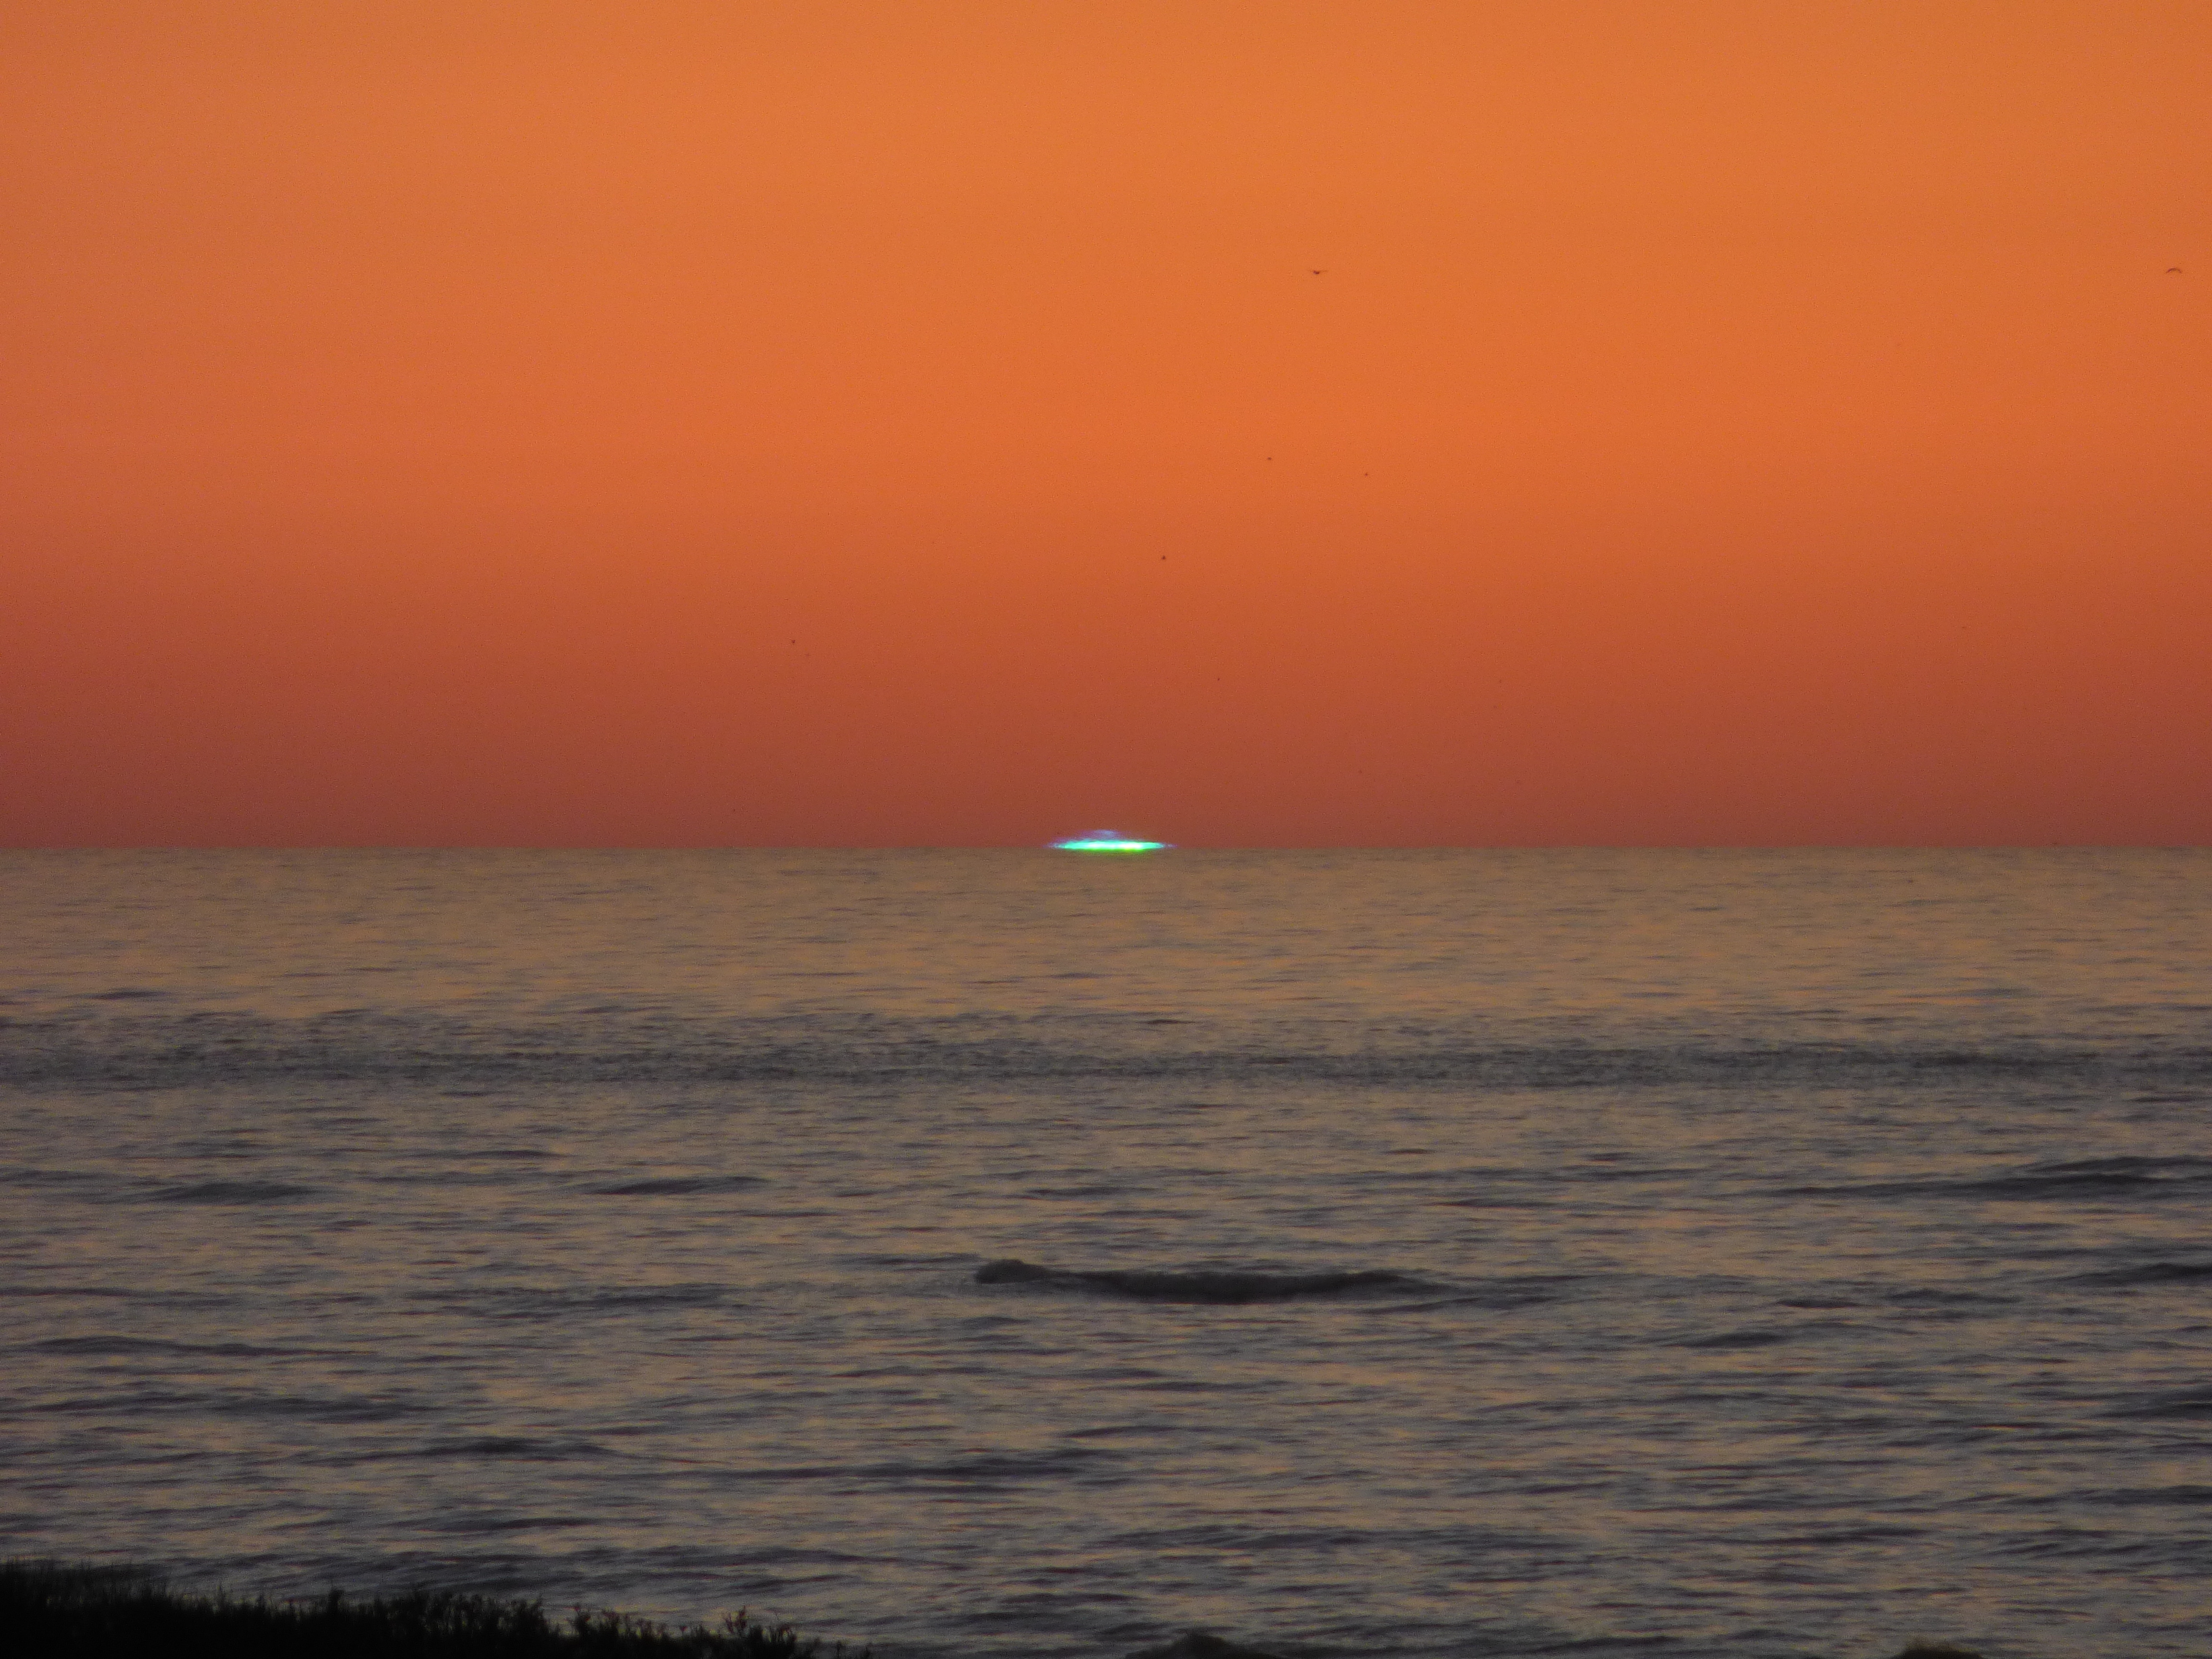 Der grüne Strahl - Aufnahme am 08.04.2017 um 20:17 Uhr auf der Insel Langeoog (alte Seenotbeobachtungsstation ca. 20 müNN). Kamera: Panasonic FZ72 mit 1200 mm Brennweite. Das blaugrüne Segment war für etwa 5 Sekunden kurz vor Sonnenuntergang zu beobachten.